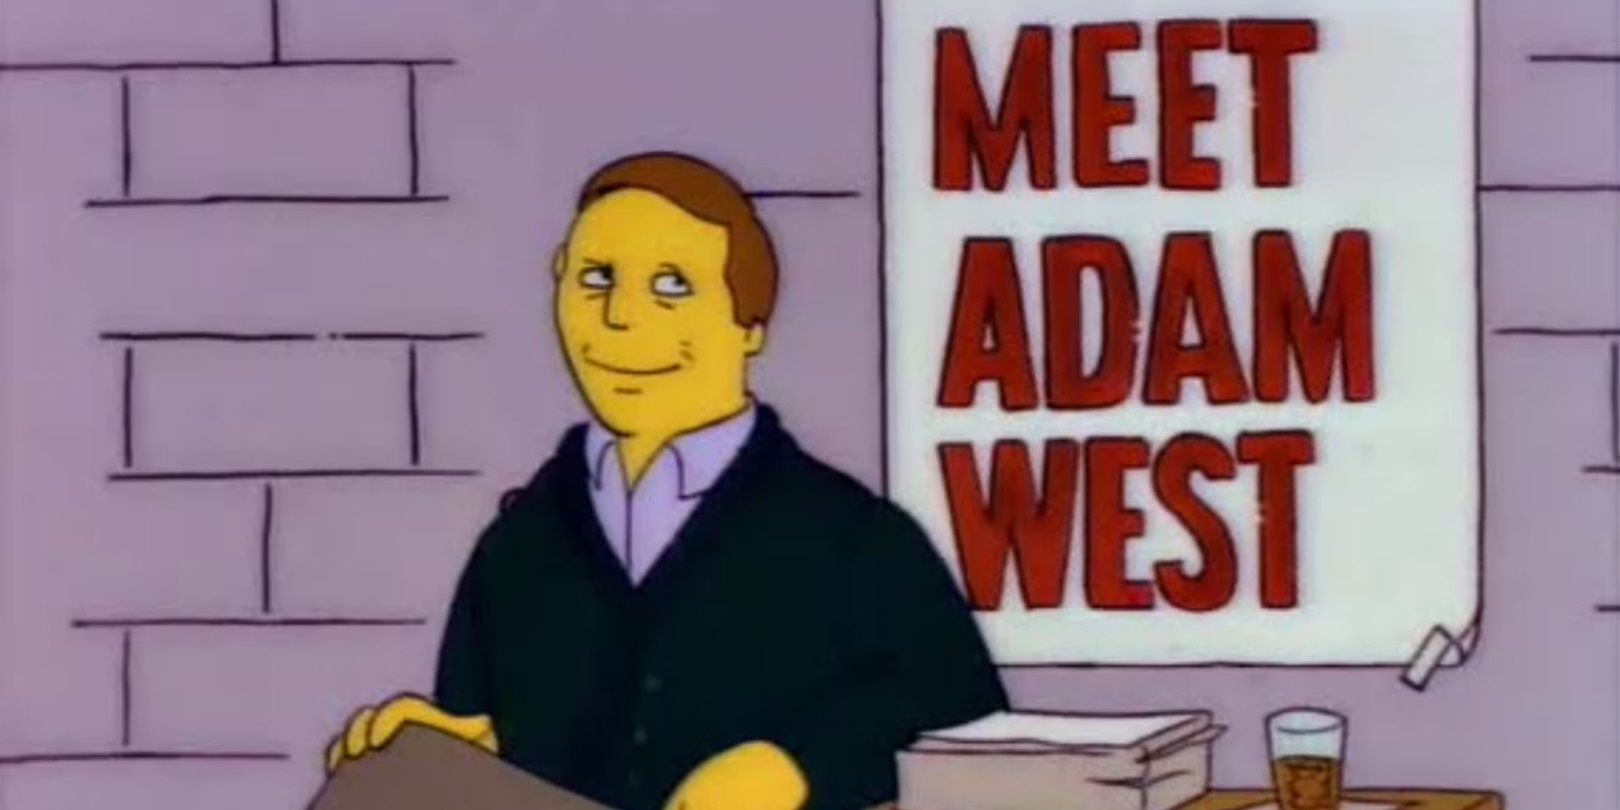 Adam West as himself in The Simpsons